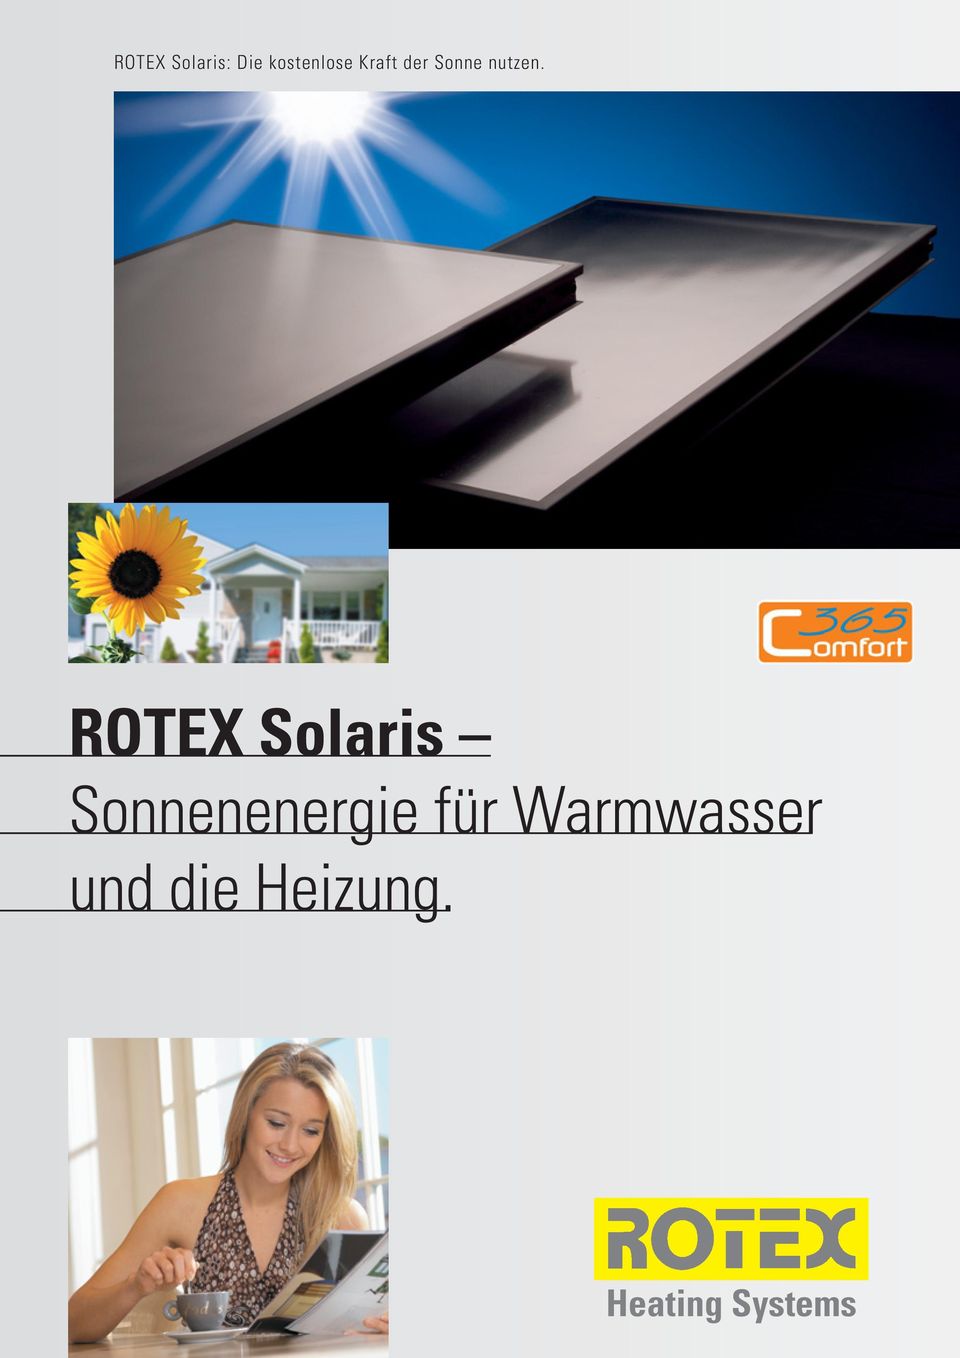 ROTEX Solaris Sonnenenergie für